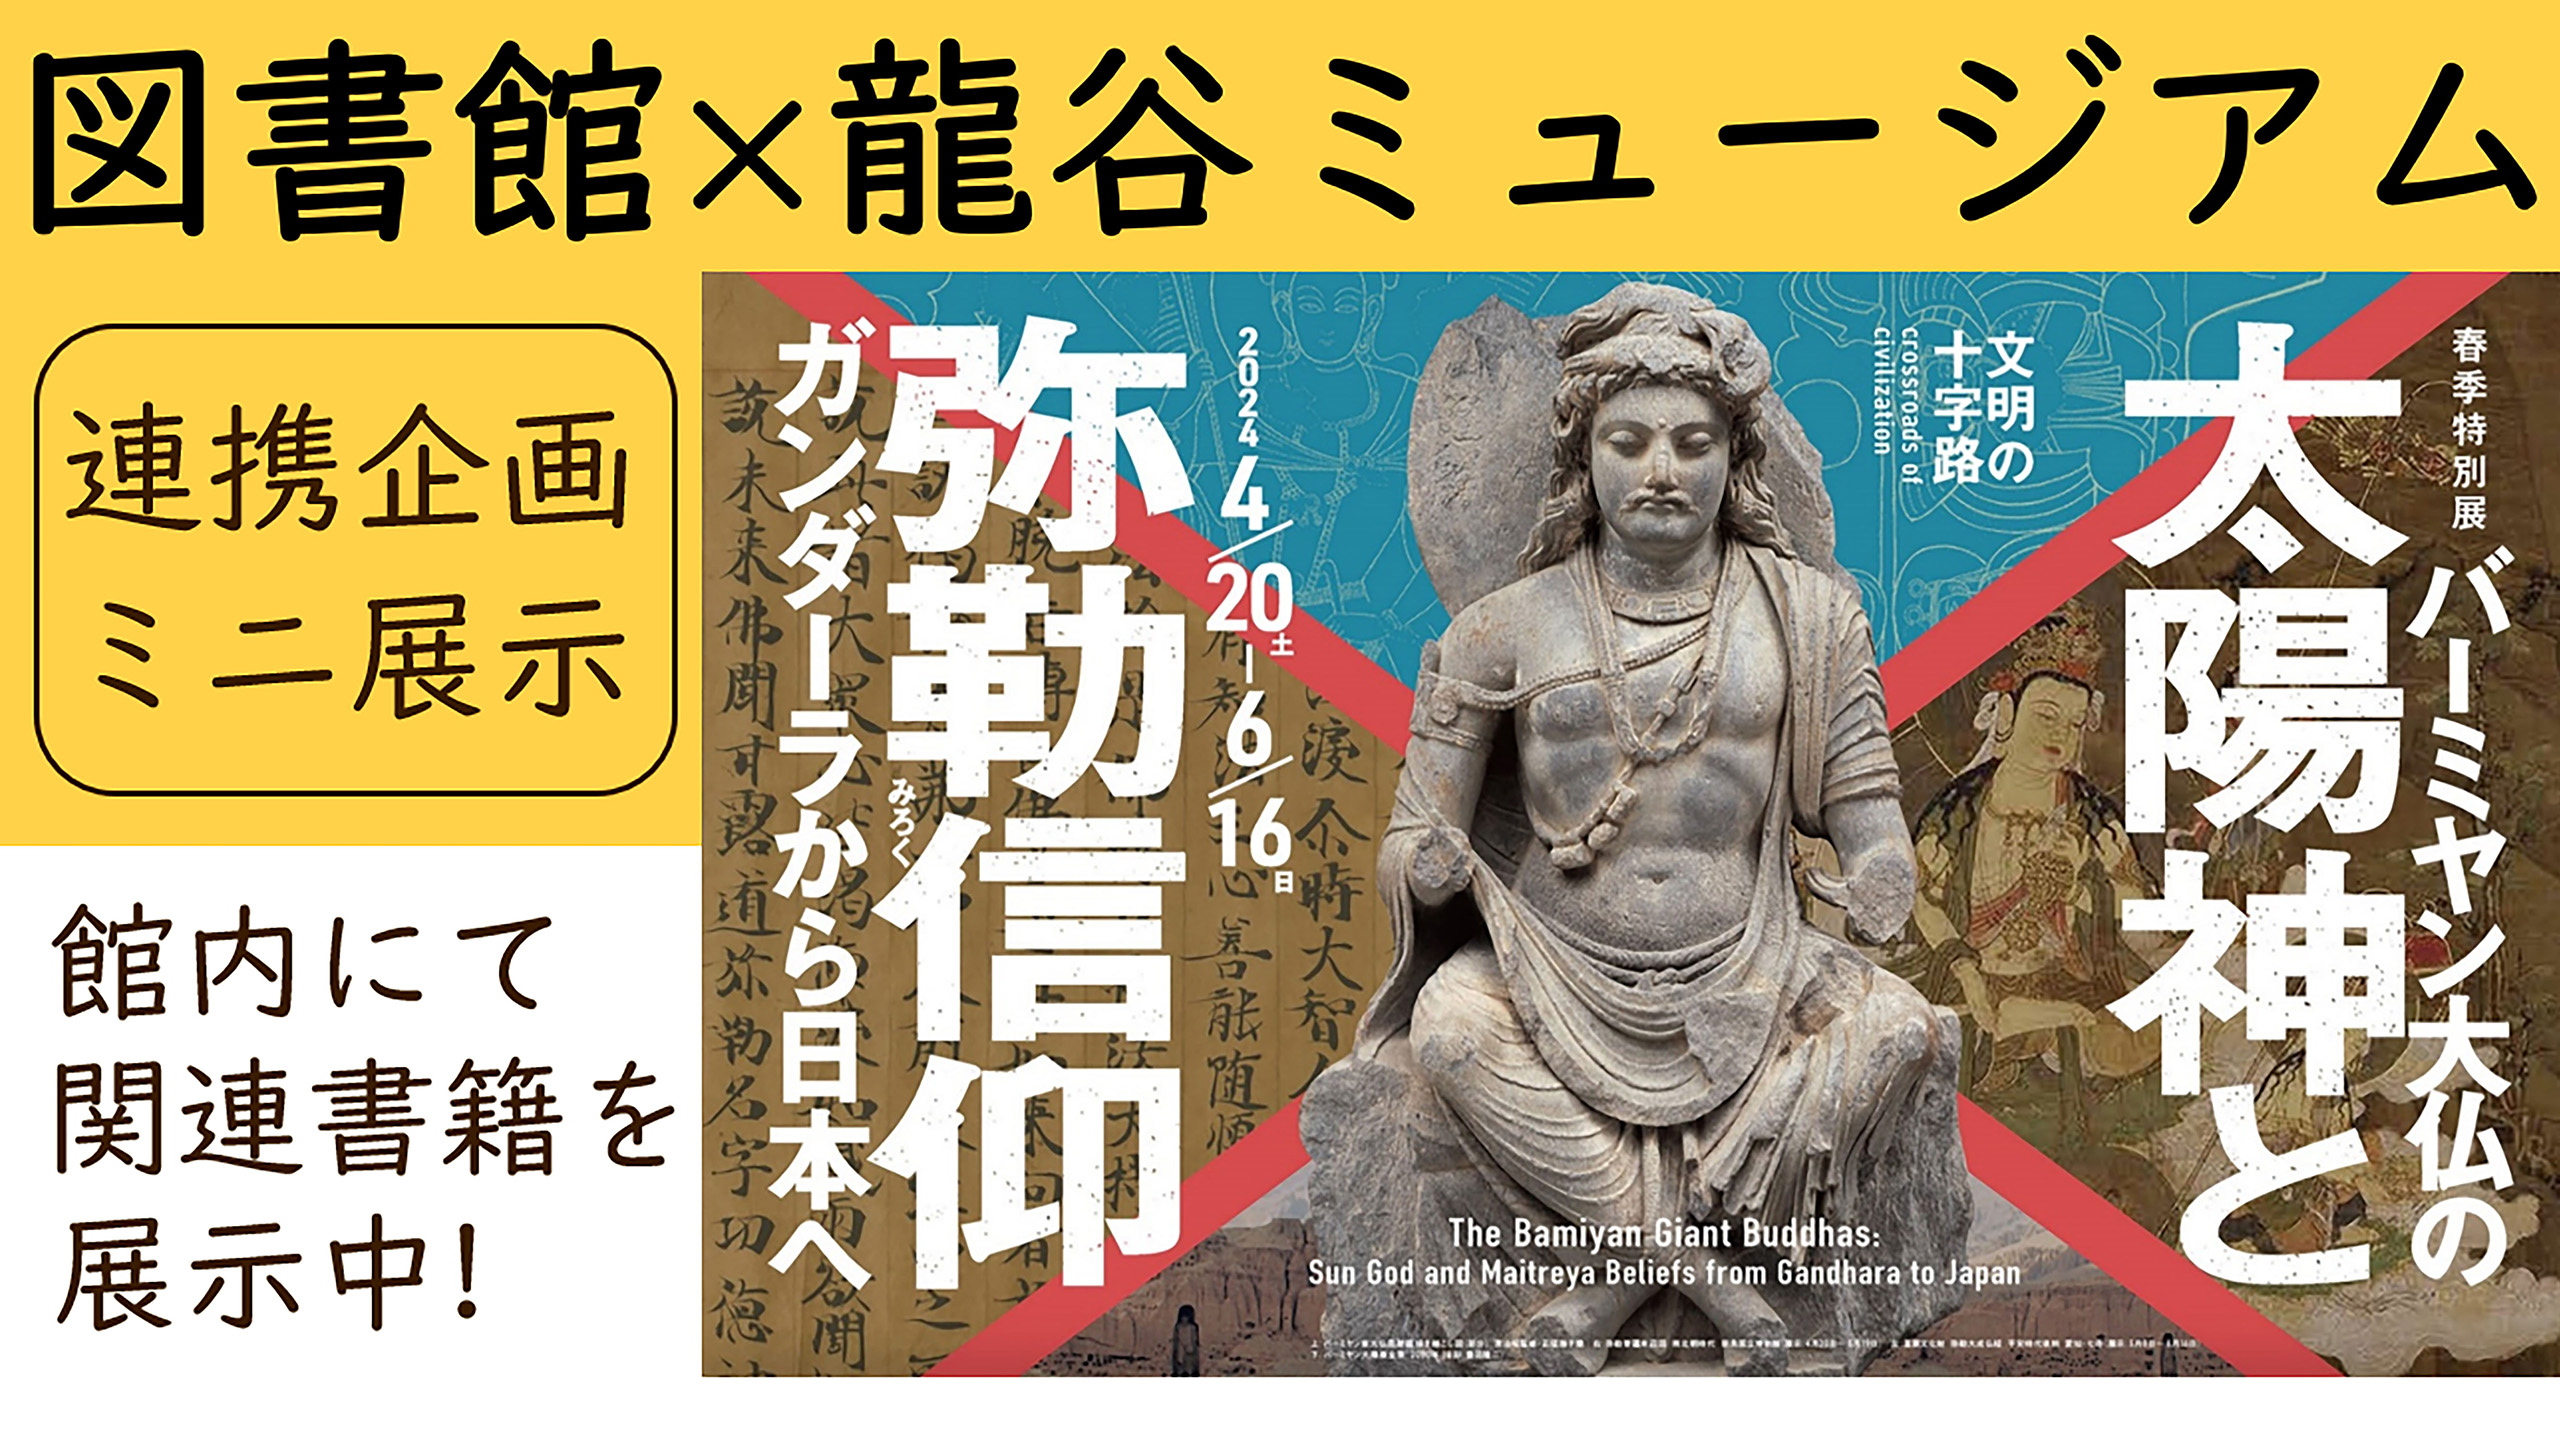 図書館×龍谷ミュージアム連携展示「文明の十字路・バーミヤン大仏の太陽神と弥勒信仰」の開催について 